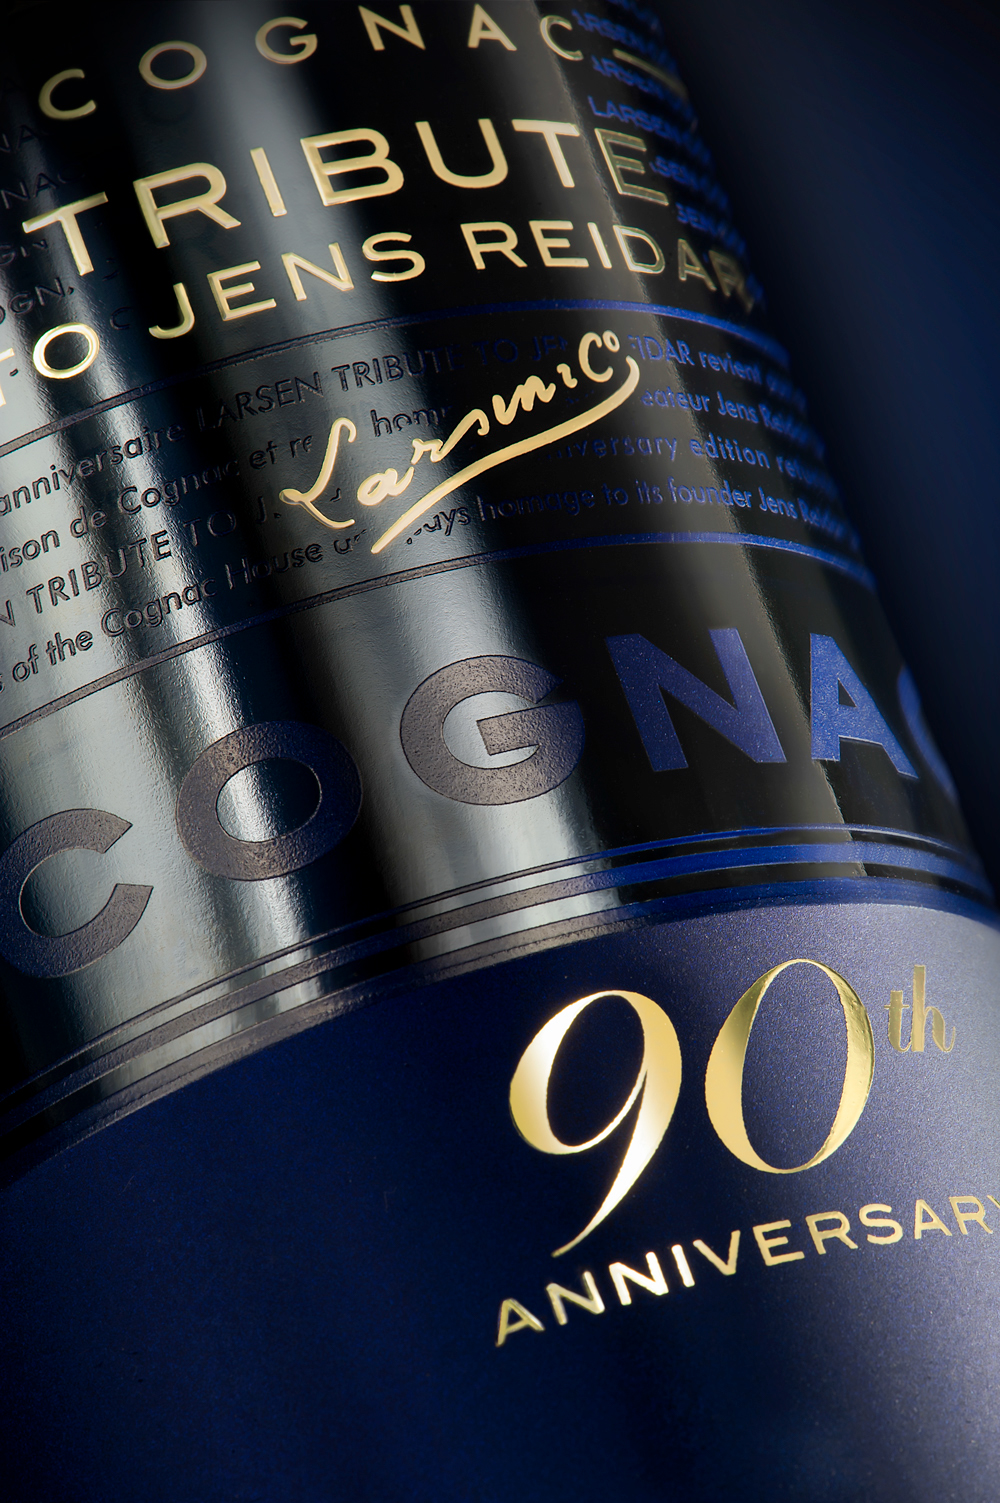 Cognac larsen tribute jens reidar norway france spirit valley Linea Packaging agency